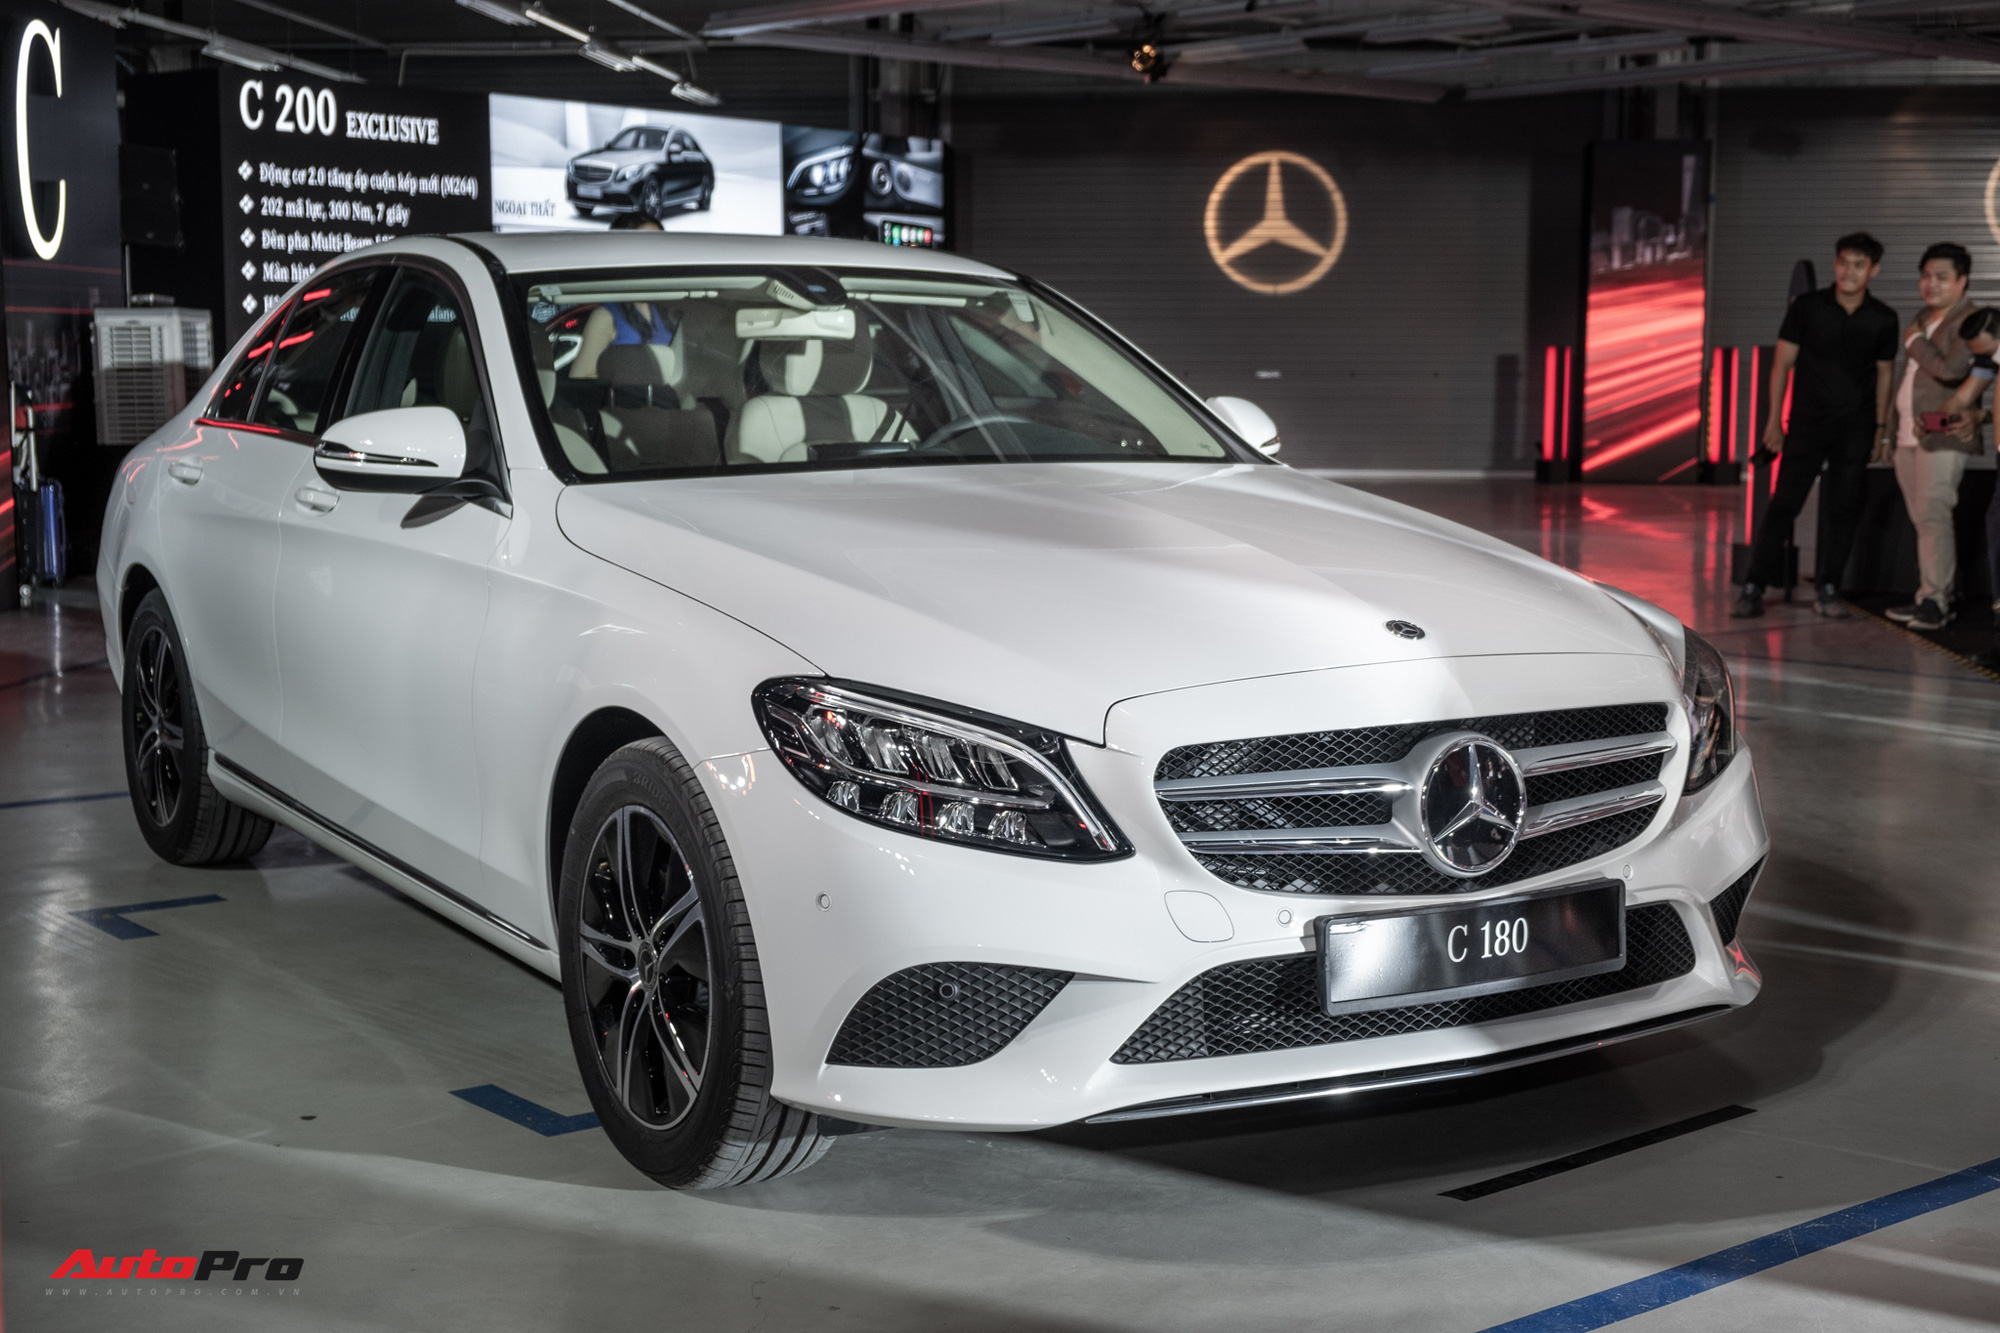 Ra mắt Mercedes-Benz C 180 giá gần 1,4 tỷ đồng - Xe sang Đức ‘vợt’ khách của Toyota Camry và Honda Accord